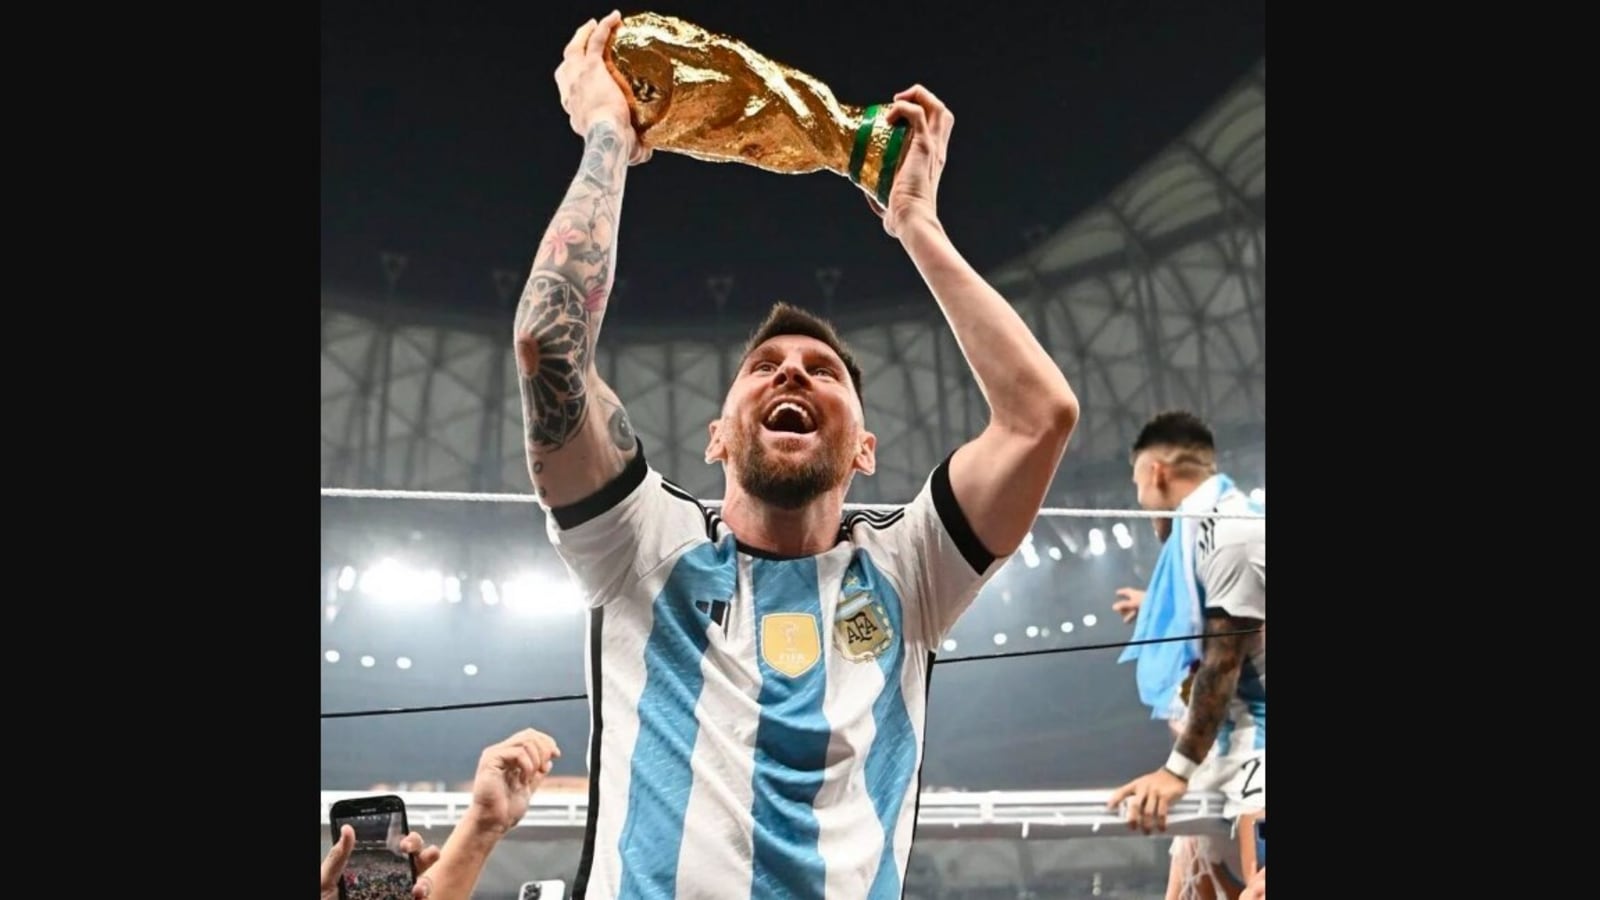 Những dự đoán của người hâm mộ về Lionel Messi đang nóng lên cùng với sự phát triển của mùa giải. Hãy xem trải qua những trận đấu còn lại, chàng siêu sao sẽ làm gì để đem về chiến thắng cho đội nhà.